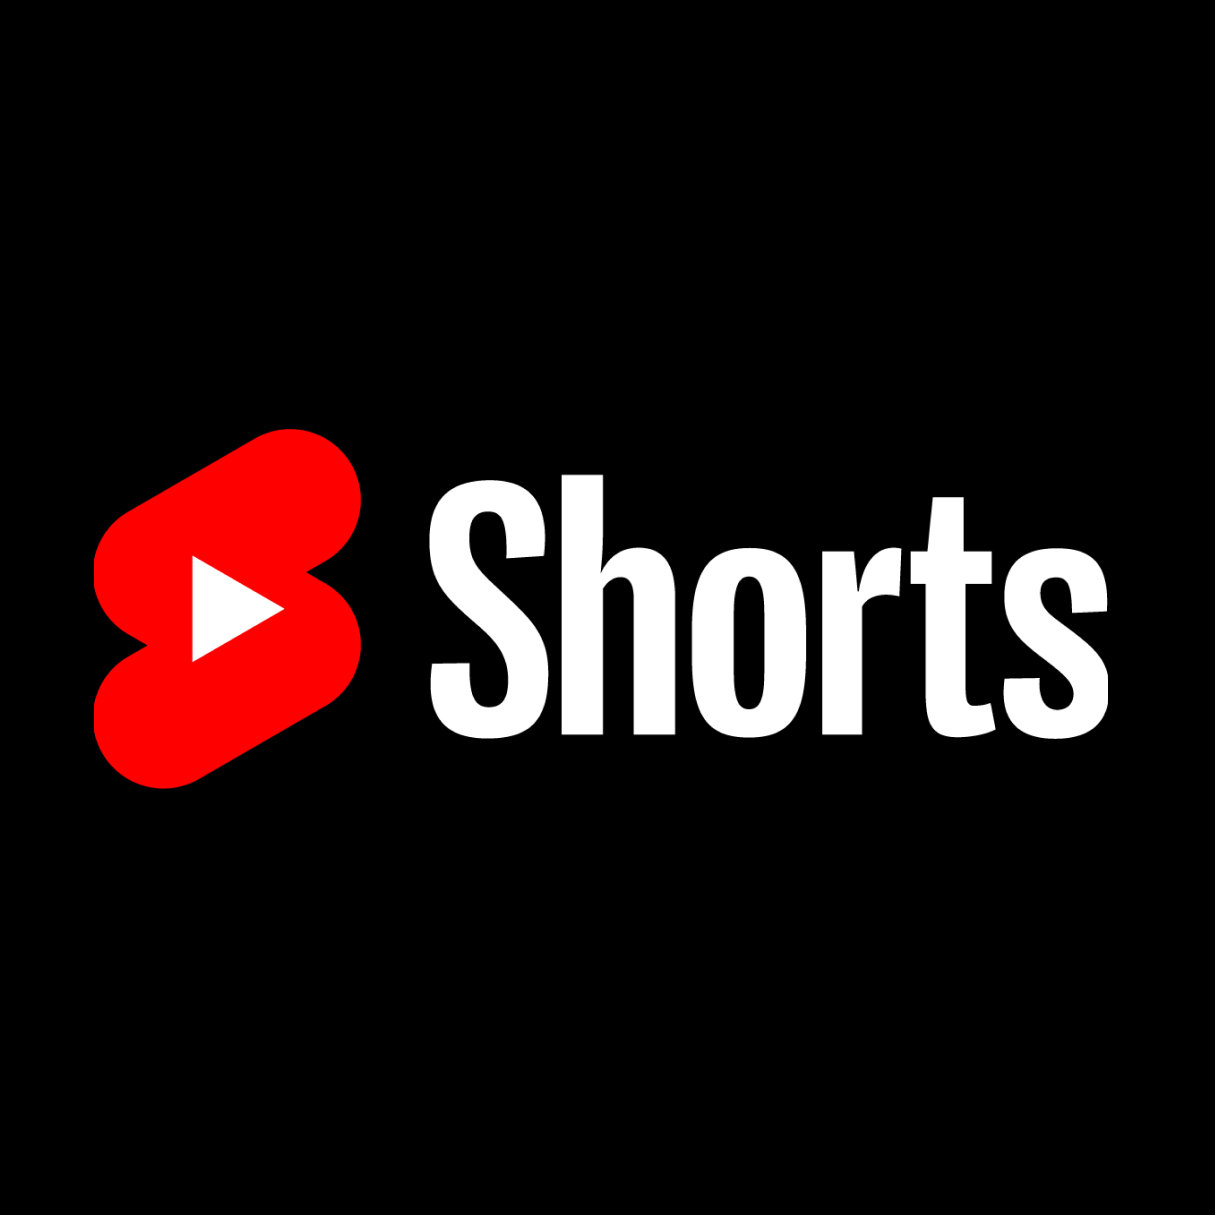 Hace unos meses, YouTube anunció el Fondo de YouTube Shorts, una iniciativa de 100 millones de dólares destinada a recompensar